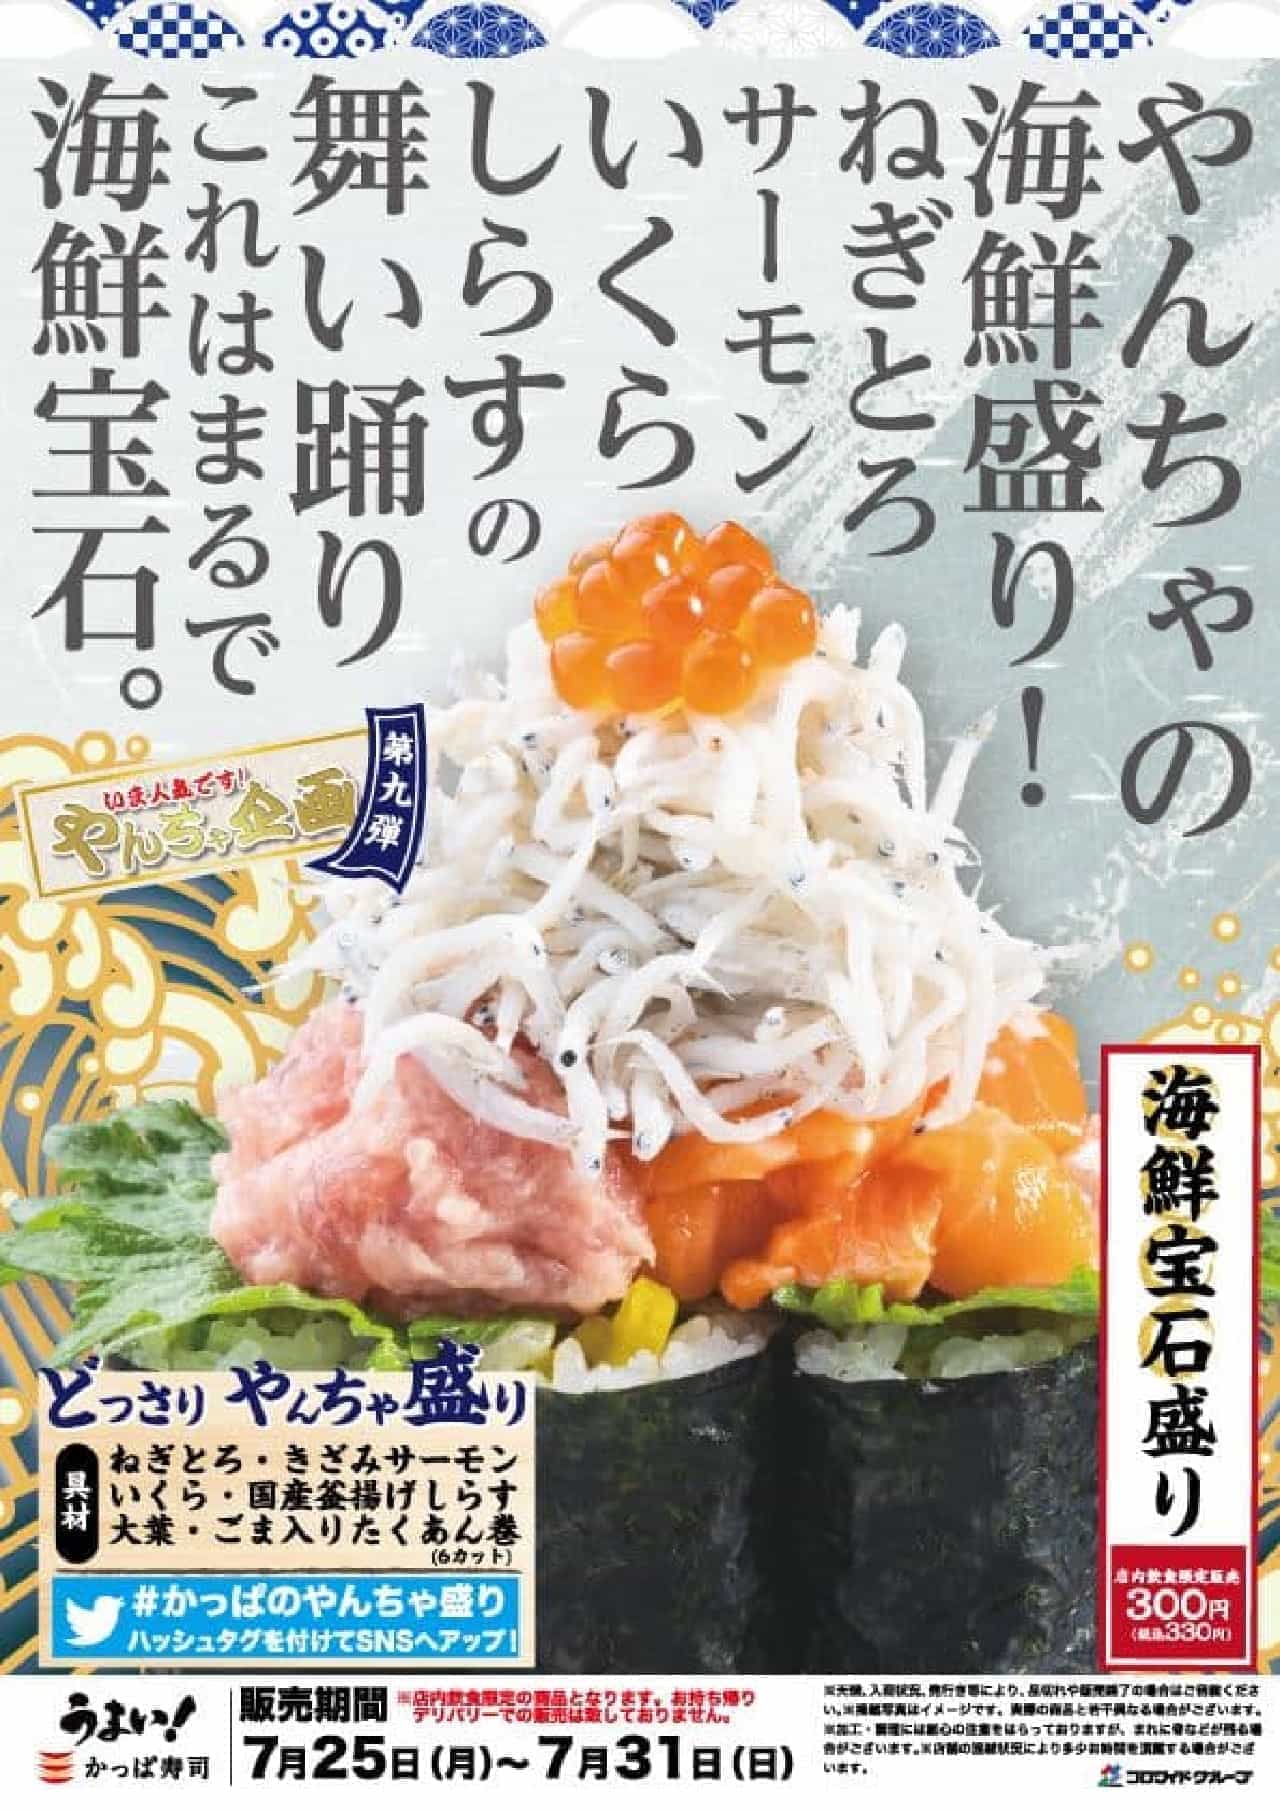 Kappa Sushi "Seafood Platter